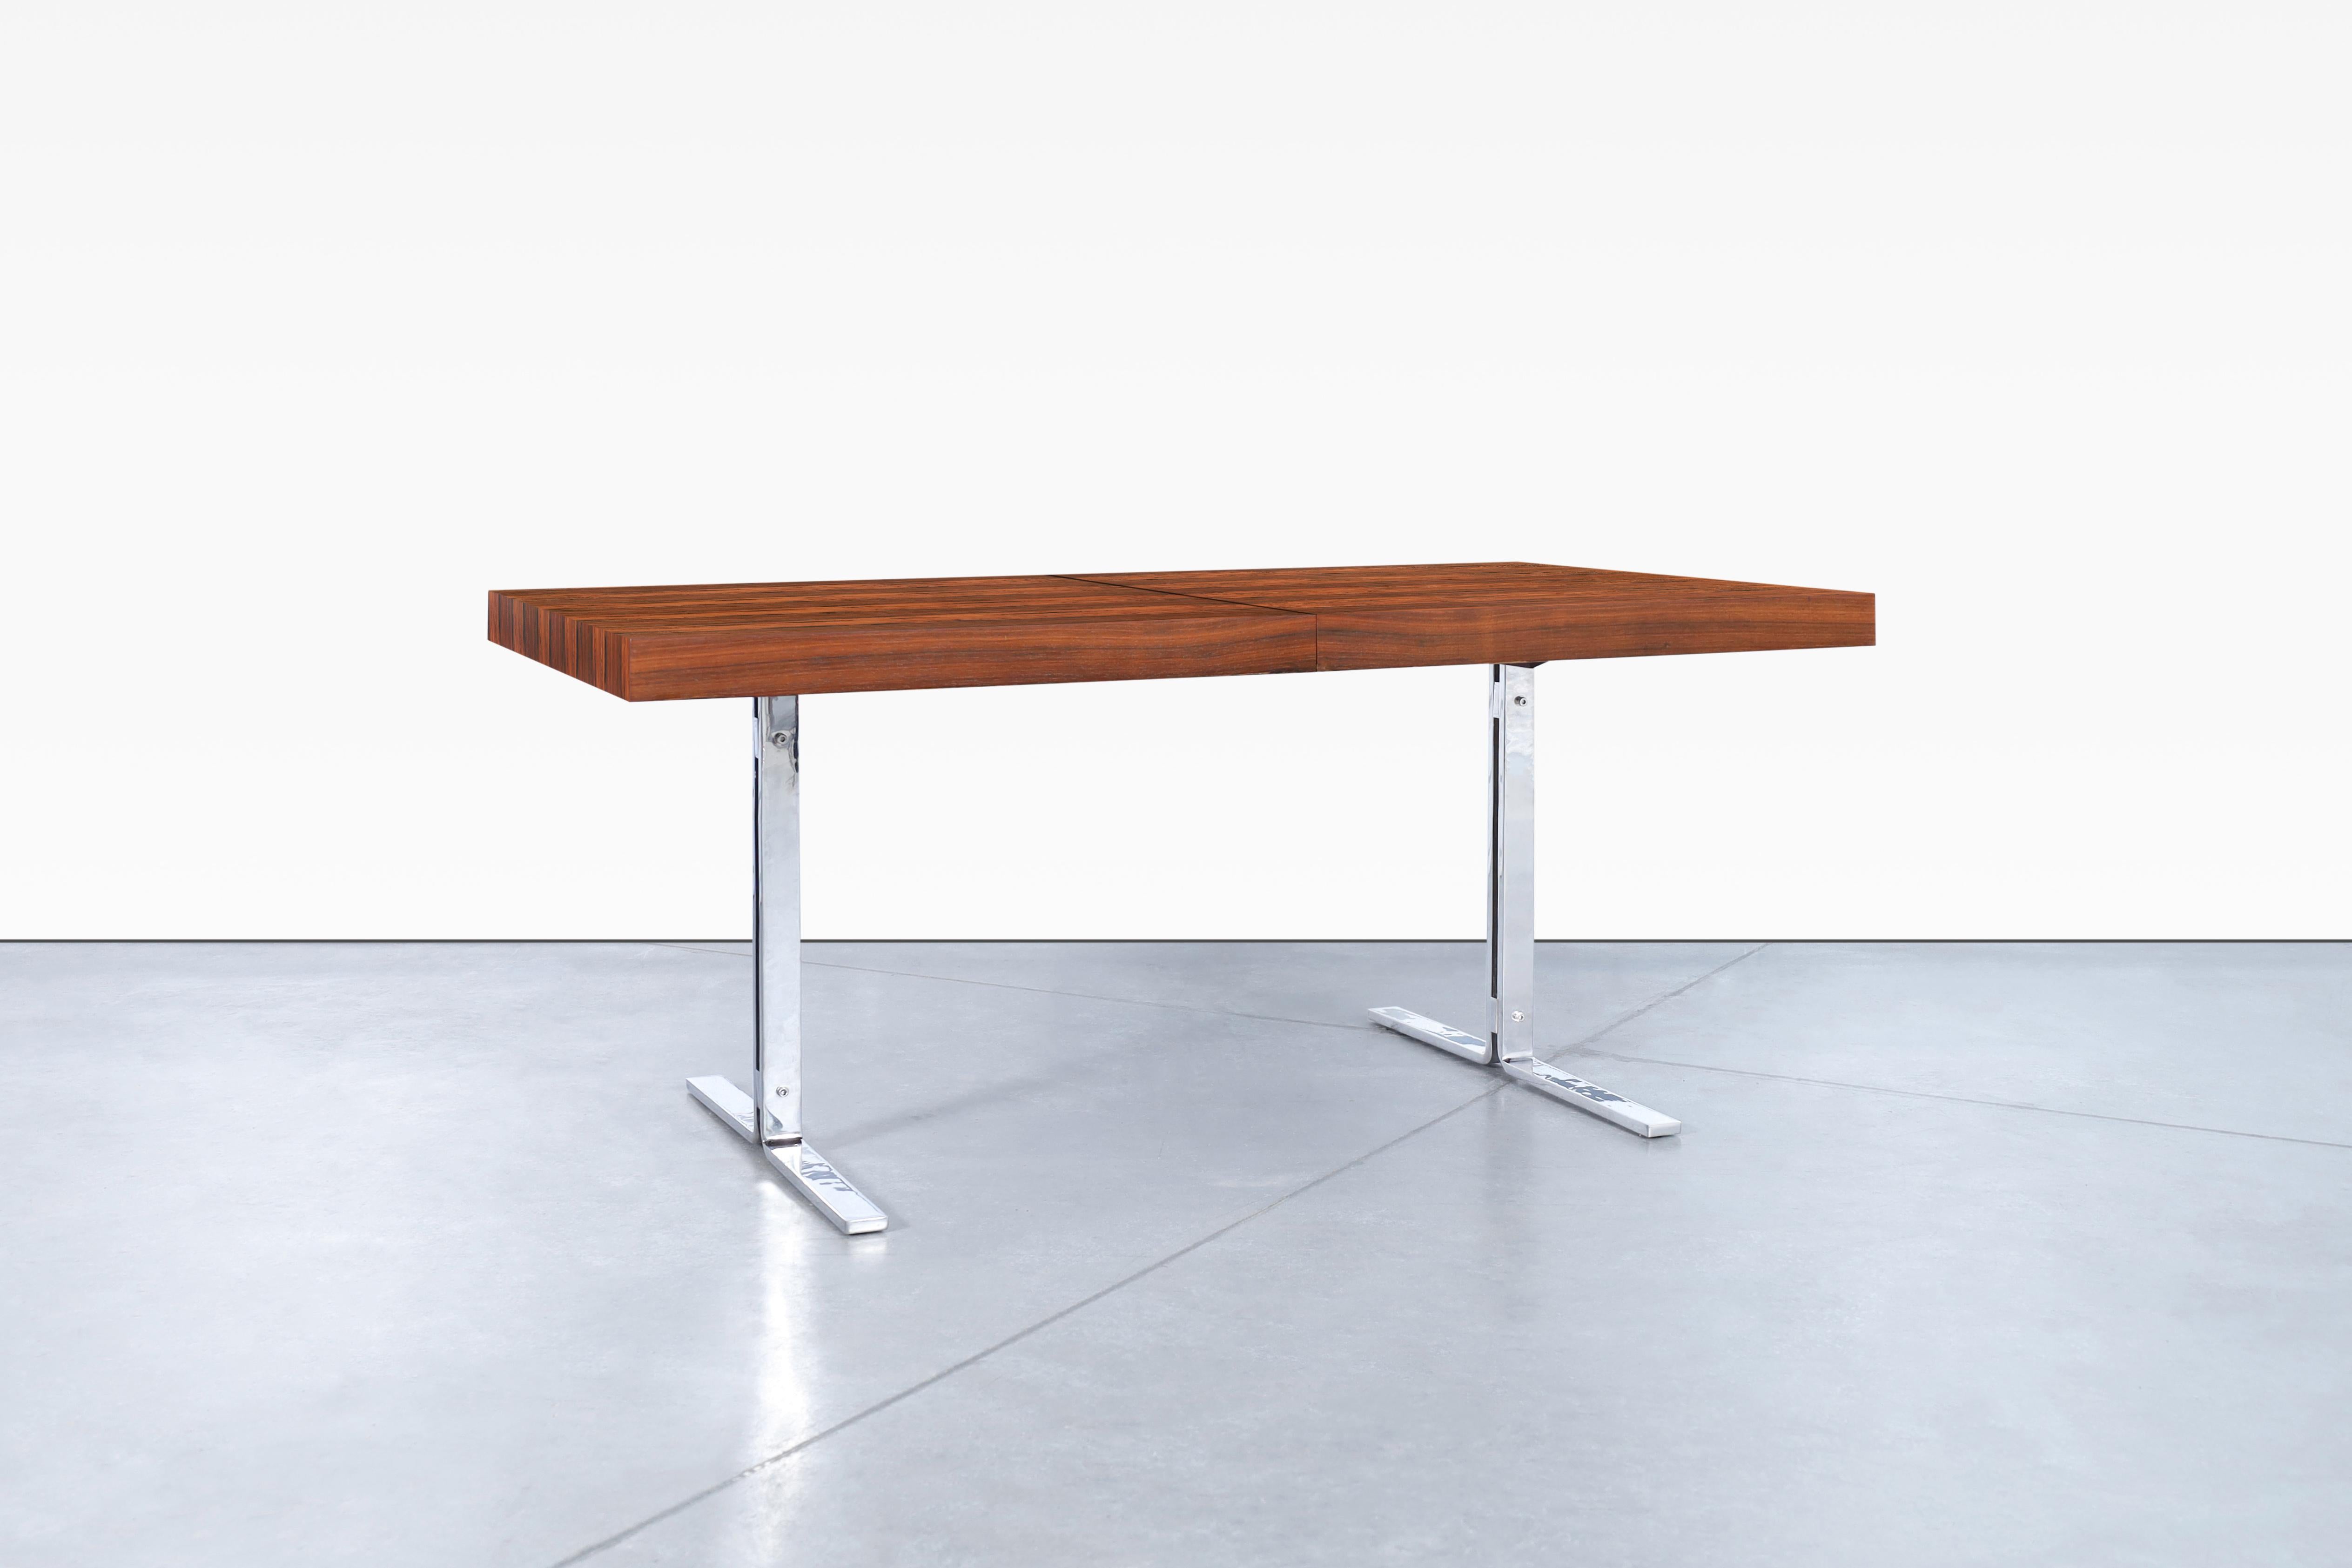 Preciosa mesa de comedor danesa moderna de palisandro, obra de Poul Nørreklit para Georg Petersens, fabricada en Dinamarca, hacia la década de 1960. Esta mesa artesanal se ha construido con un diseño vanguardista, está hecha de palisandro brasileño